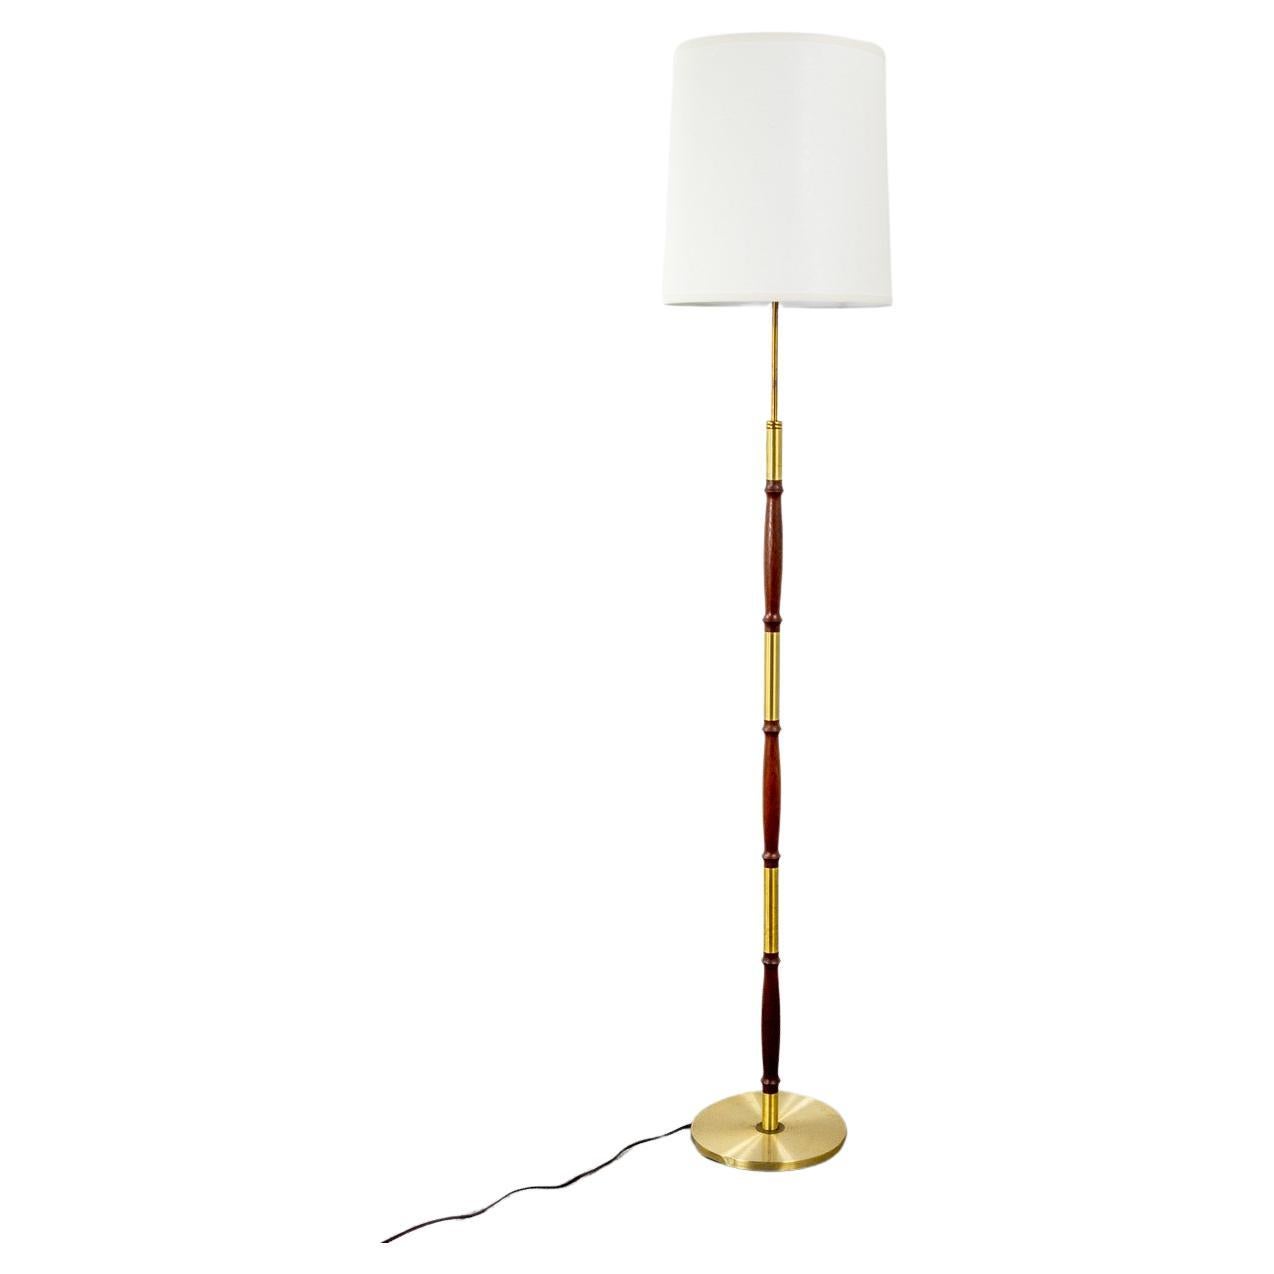 Dänische moderne Stehlampe aus Rosenholz und Metall, modern